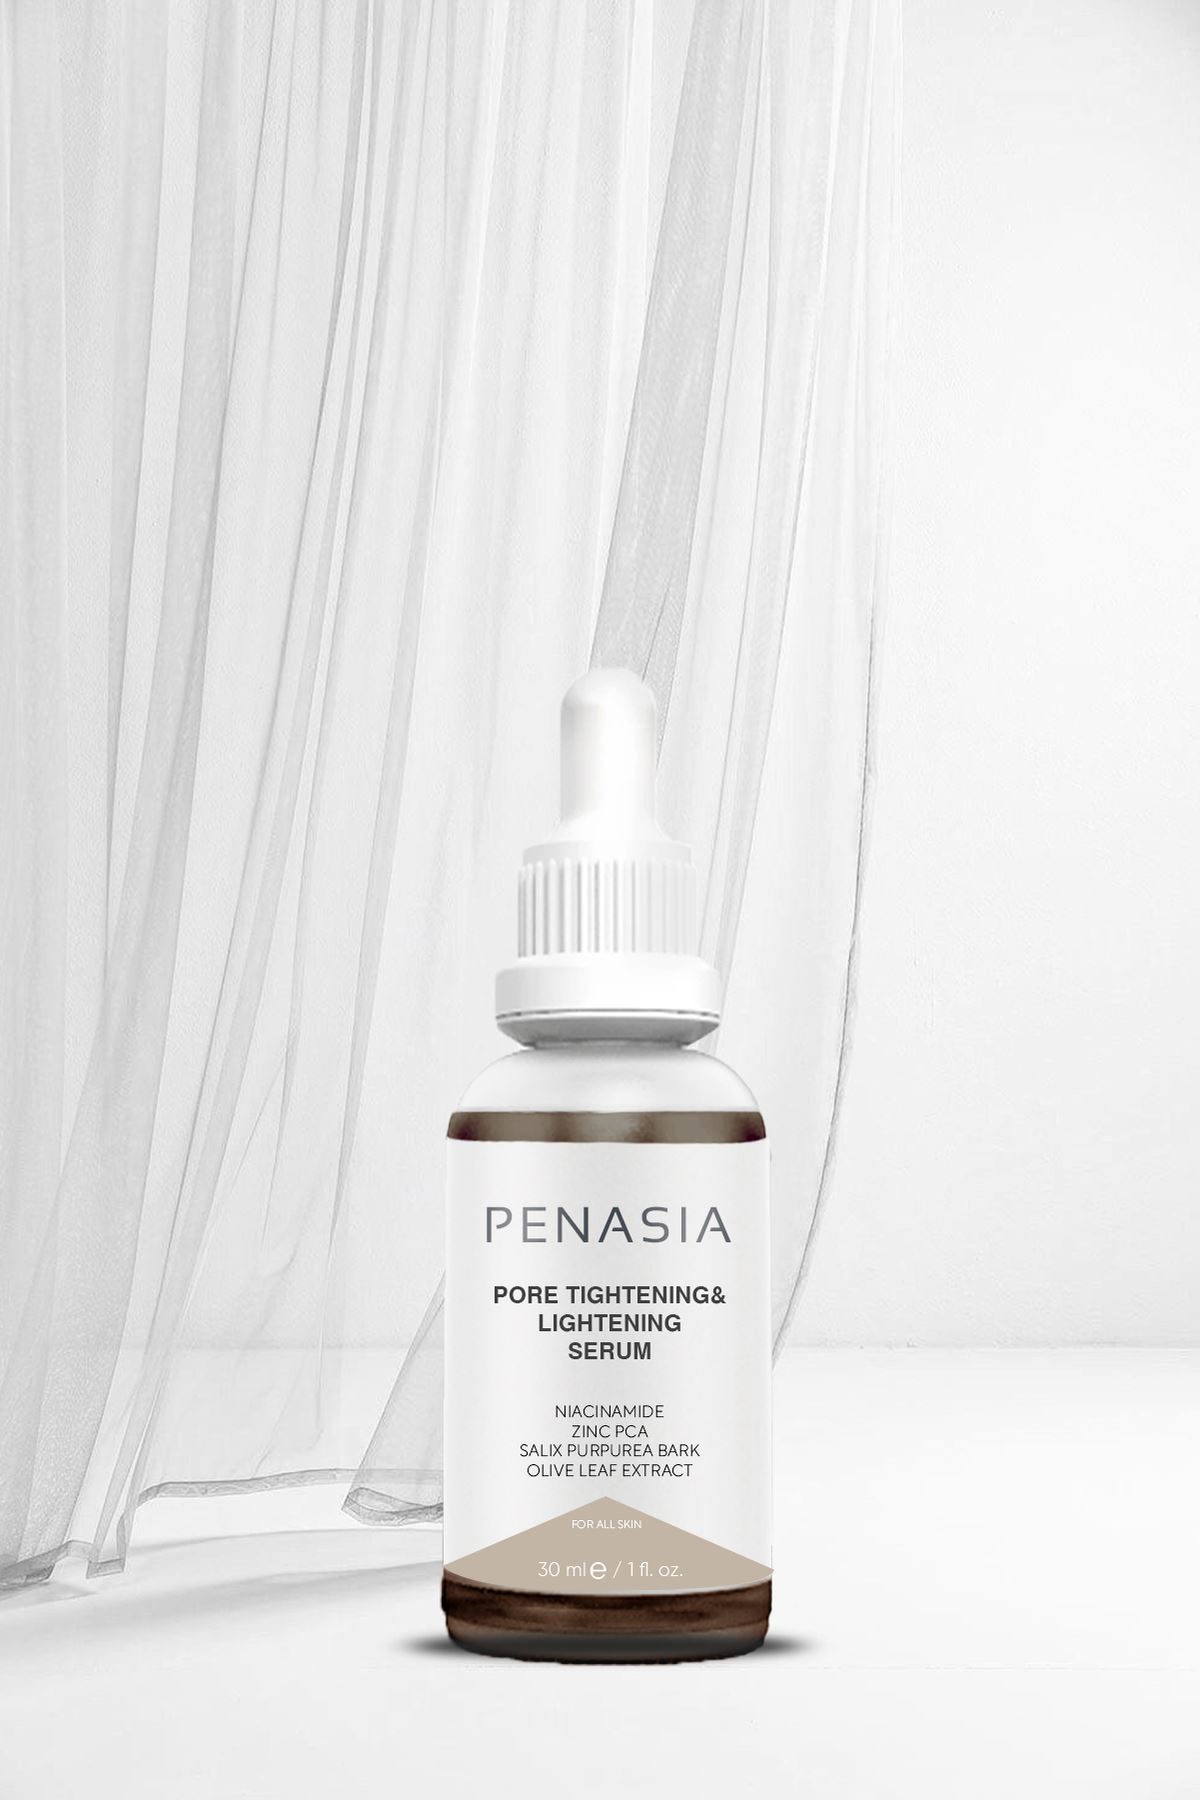 Penasia Pore Tightening & Lightening Canlandırıcı ve Gözenek Sıkılaştırıcı Serum